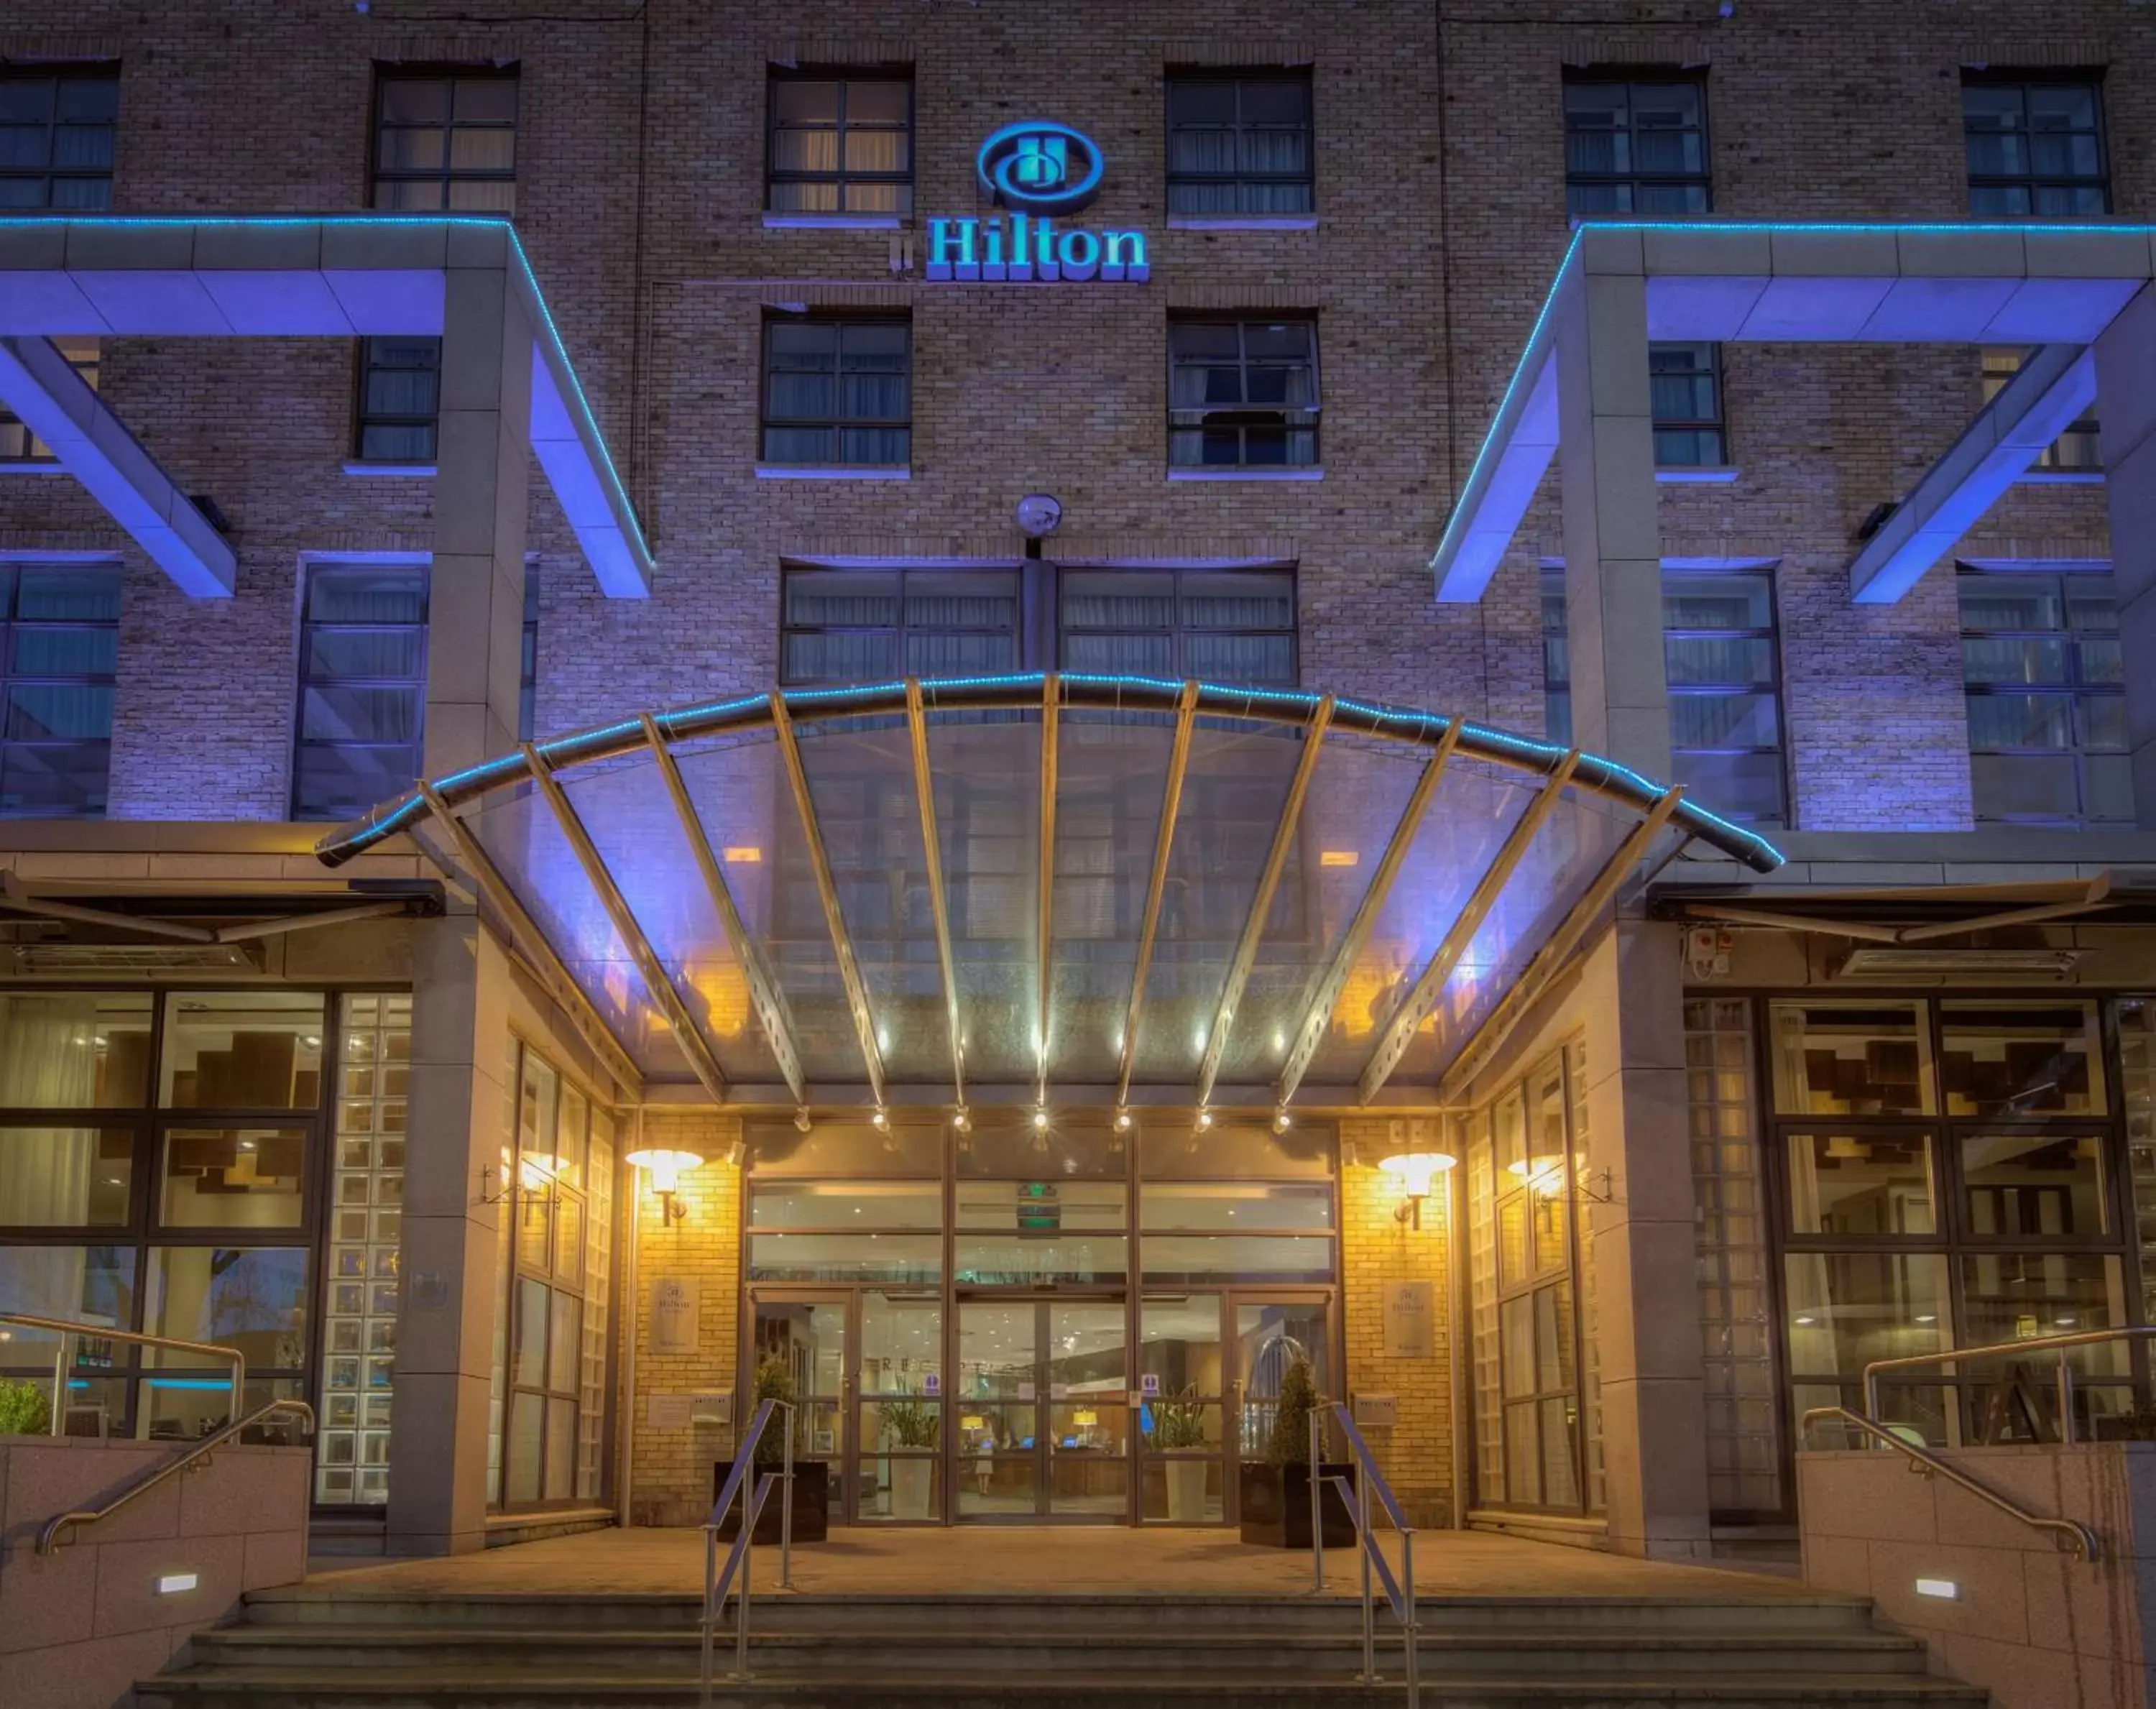 Property building, Facade/Entrance in Hilton Dublin